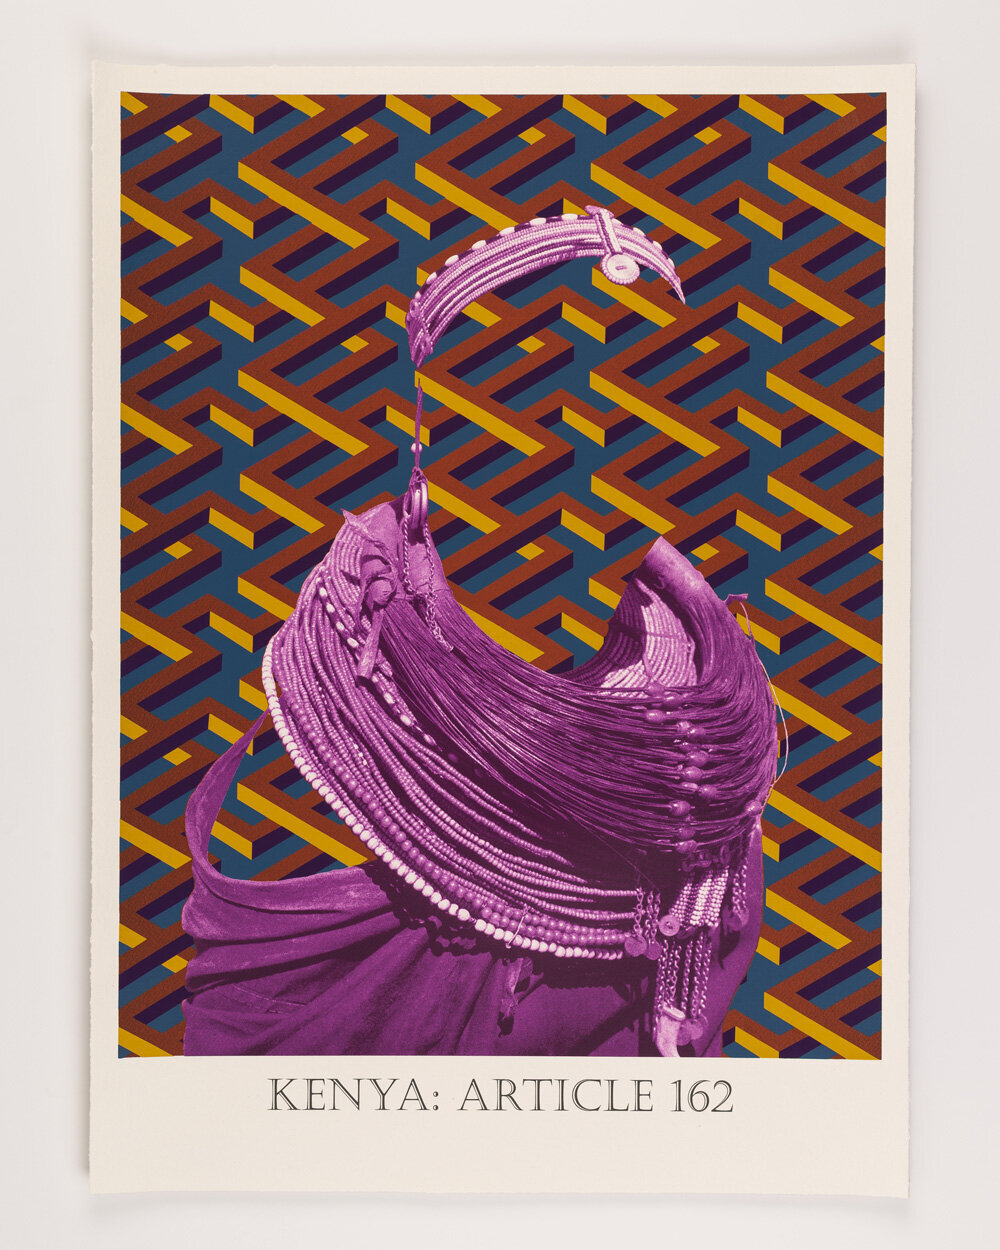 Kenya: Article 171